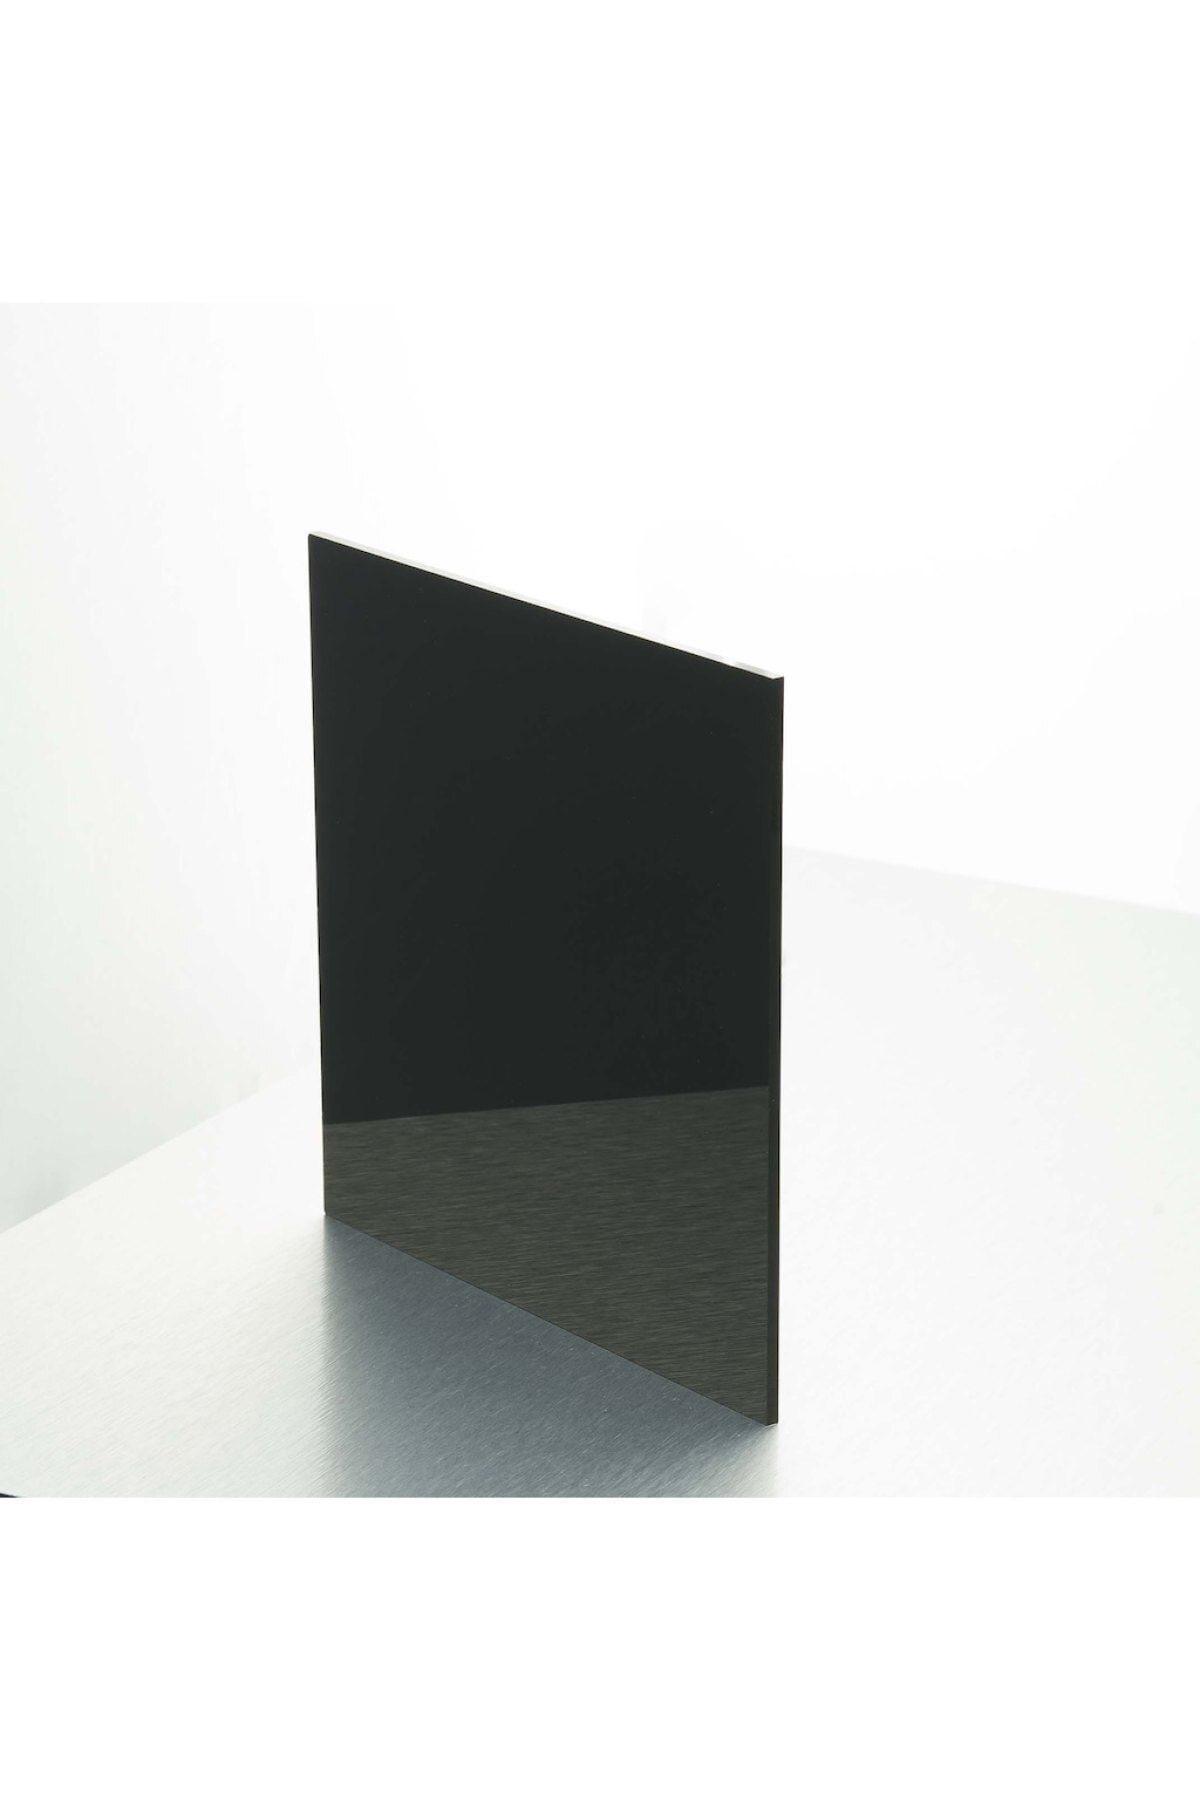 Işık Plastik 2.8 - 3mm Siyah Pleksi Pleksiglas Levha | Tüm Ebatlar